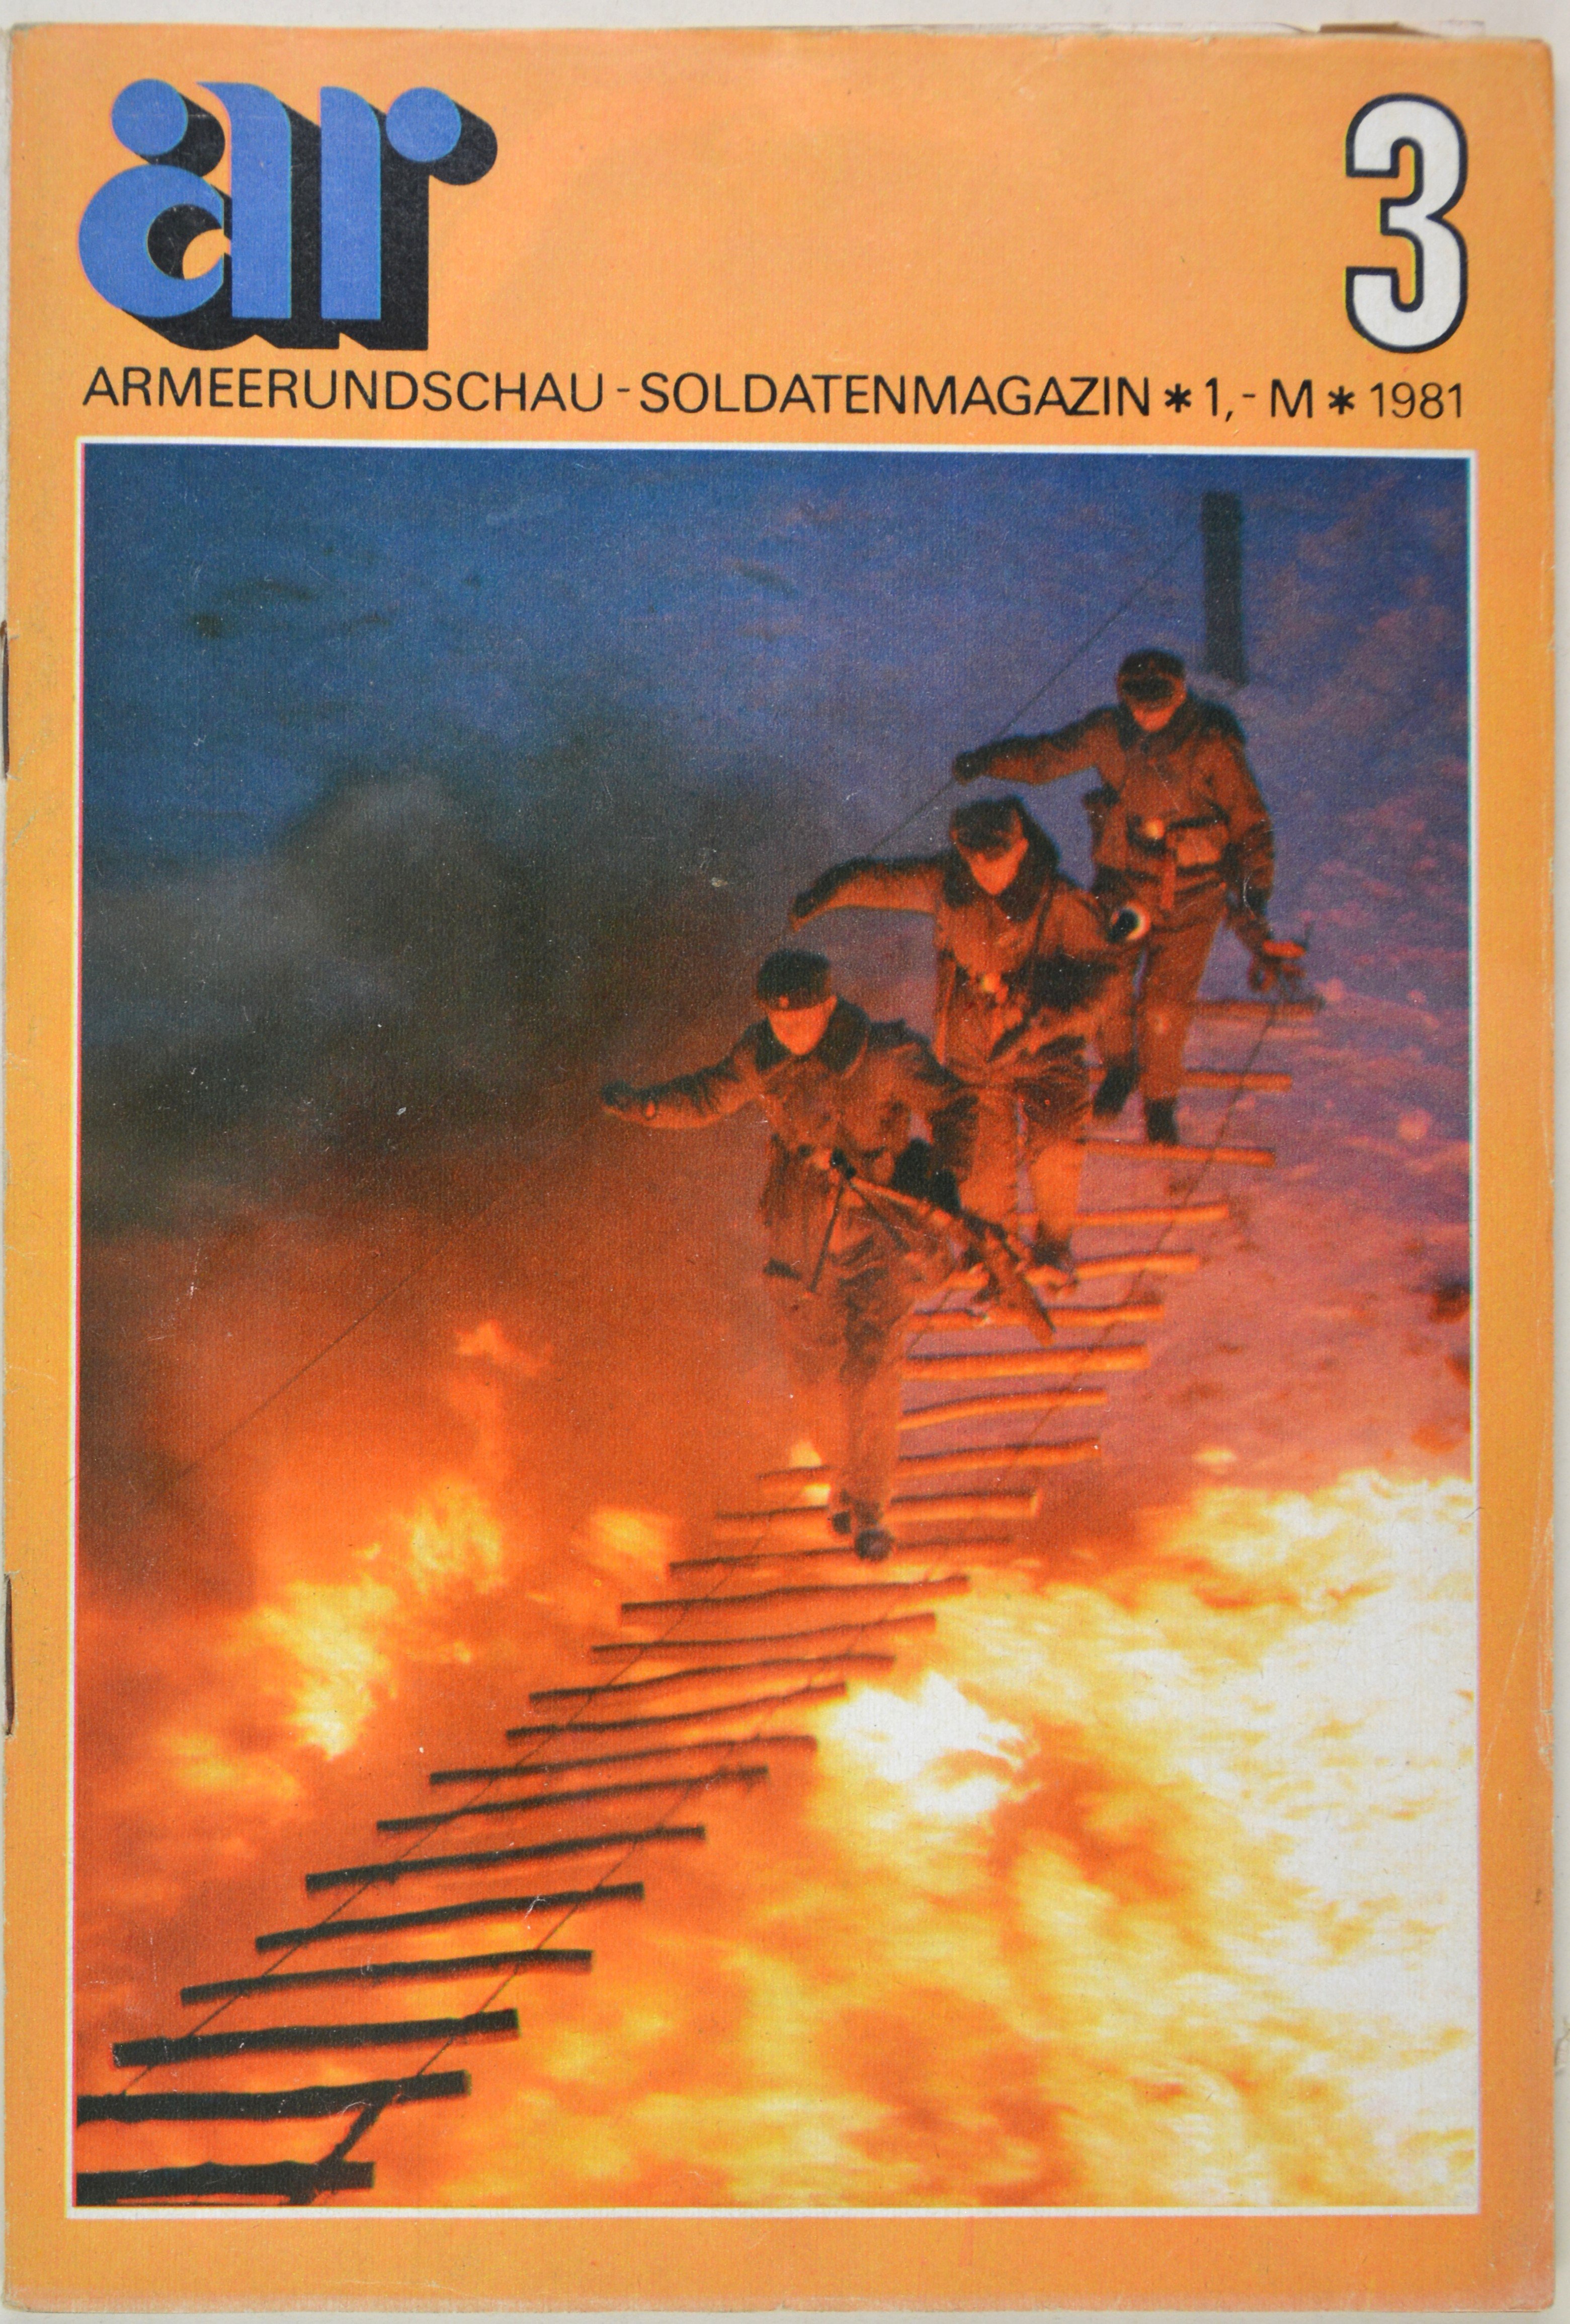 Armeerundschau - Soldatenmagazin (1981), Heft 3 (DDR Geschichtsmuseum im Dokumentationszentrum Perleberg CC BY-SA)